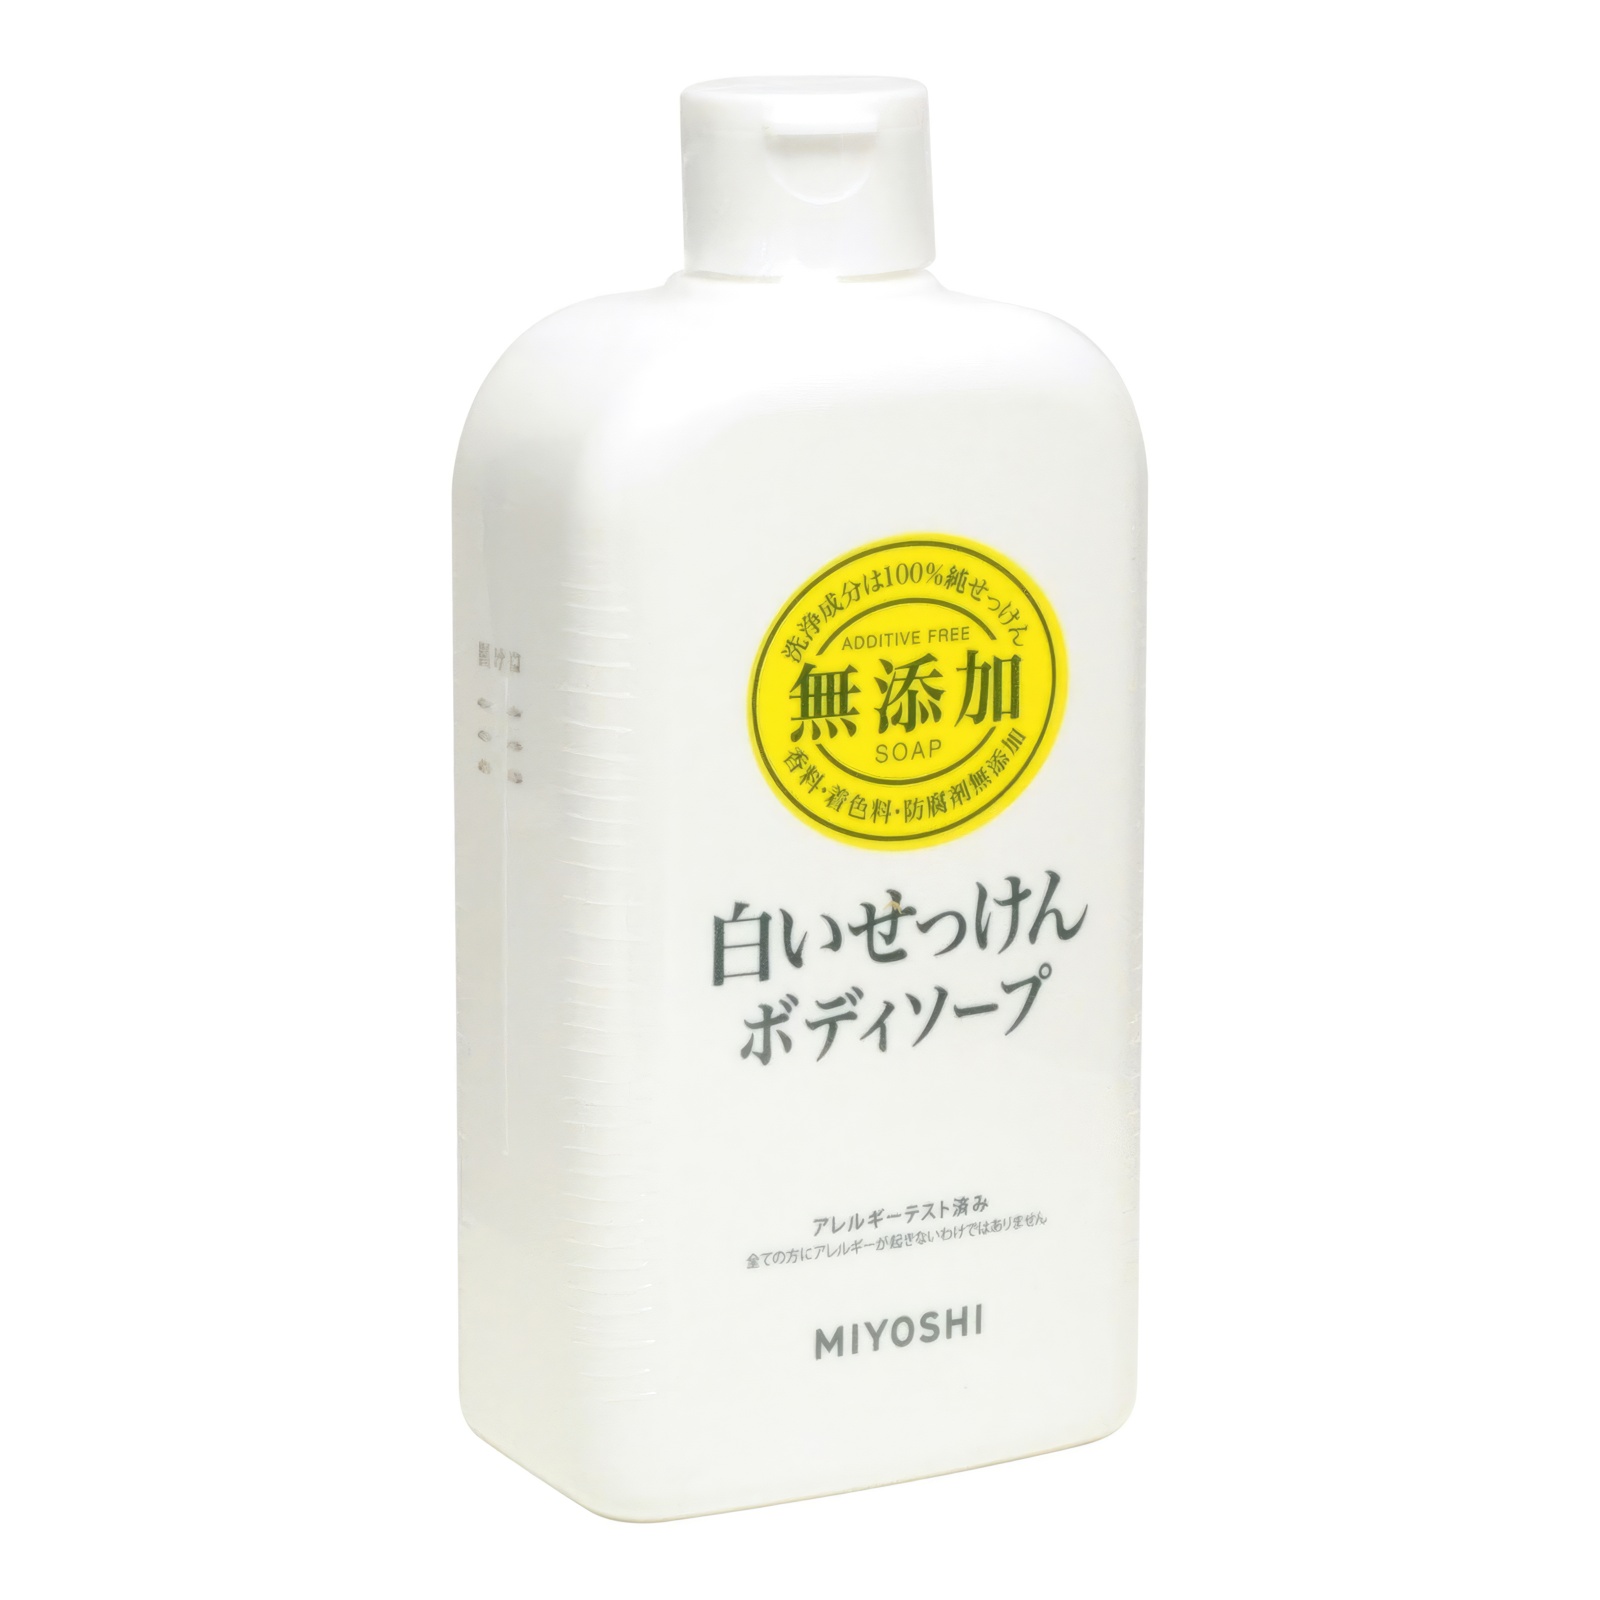 Натуральное жидкое гель-мыло MIYOSHI эко для тела 400 мл натуральное мыло hemani с черным тмином от сухости и воспалений 75 г